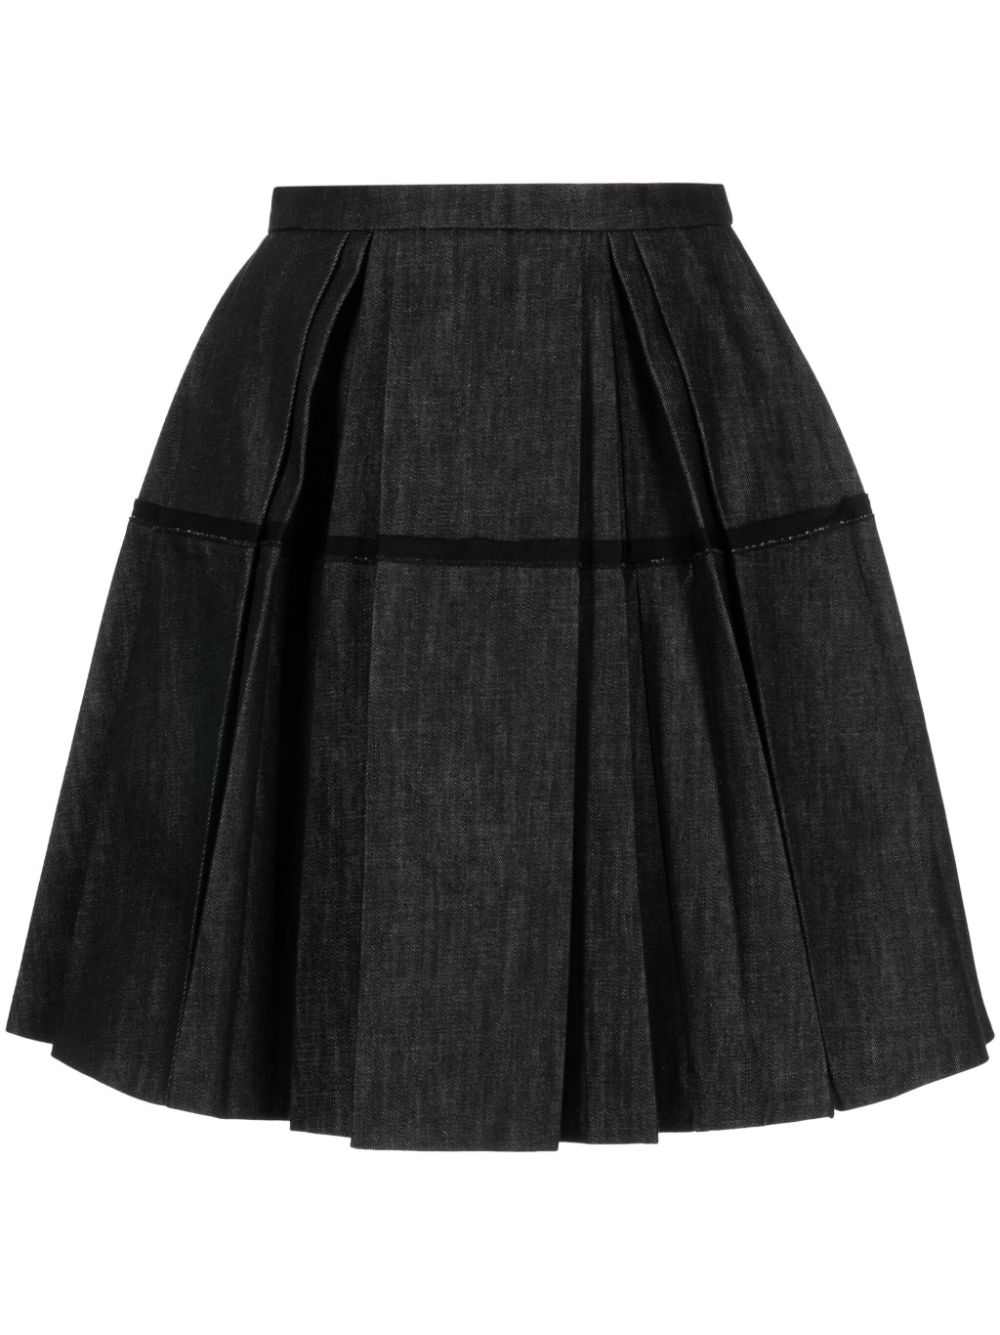 Dice Kayek high-waisted pleated denim skirt - Black von Dice Kayek